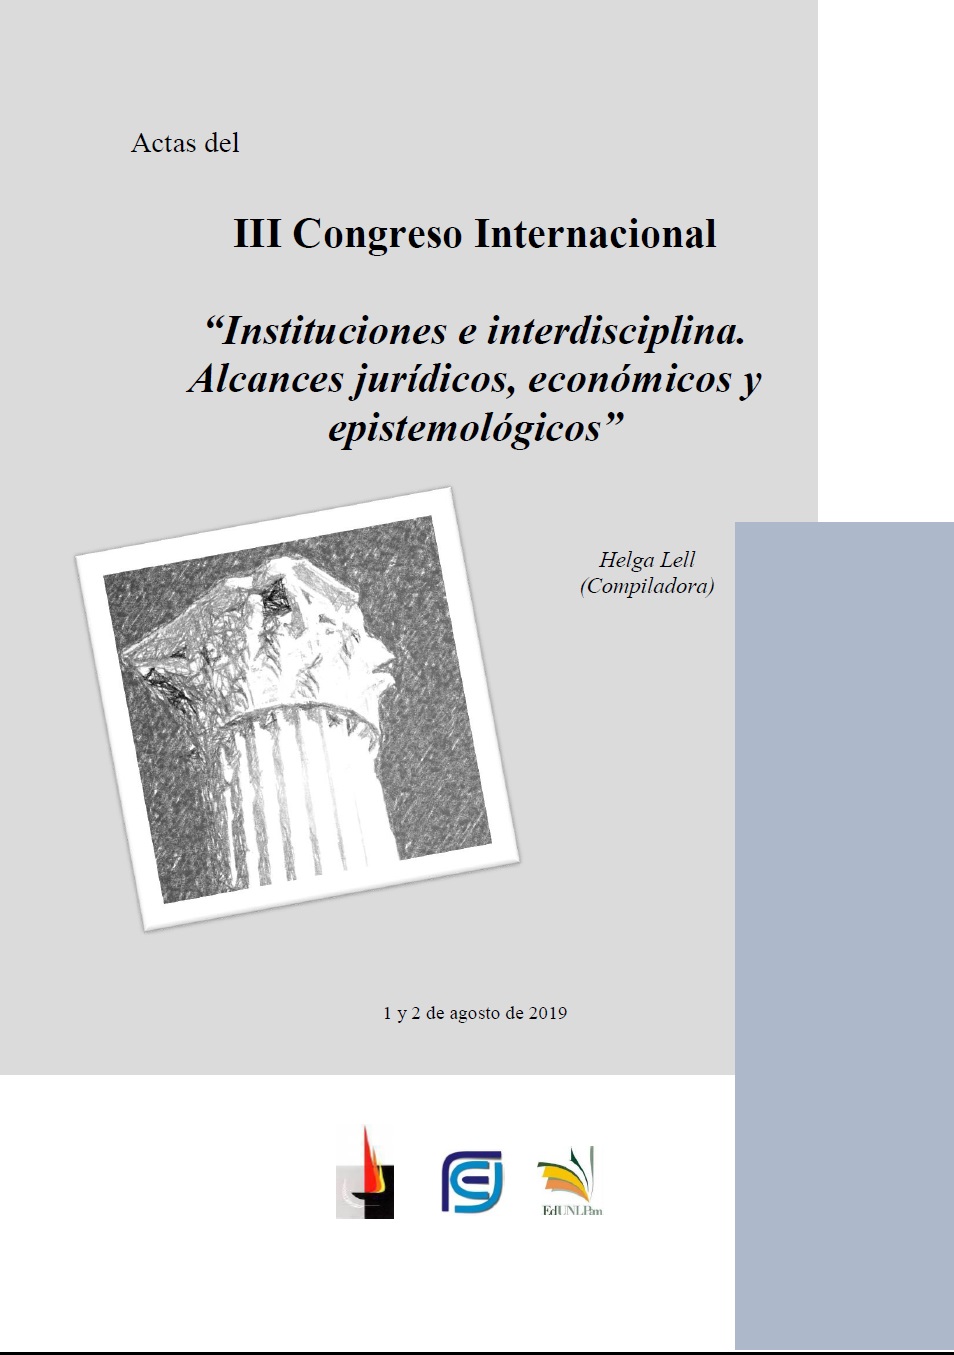 Actas del III Congreso Internacional “Instituciones e interdisciplina. Alcances jurídicos, económicos y epistemológicos”